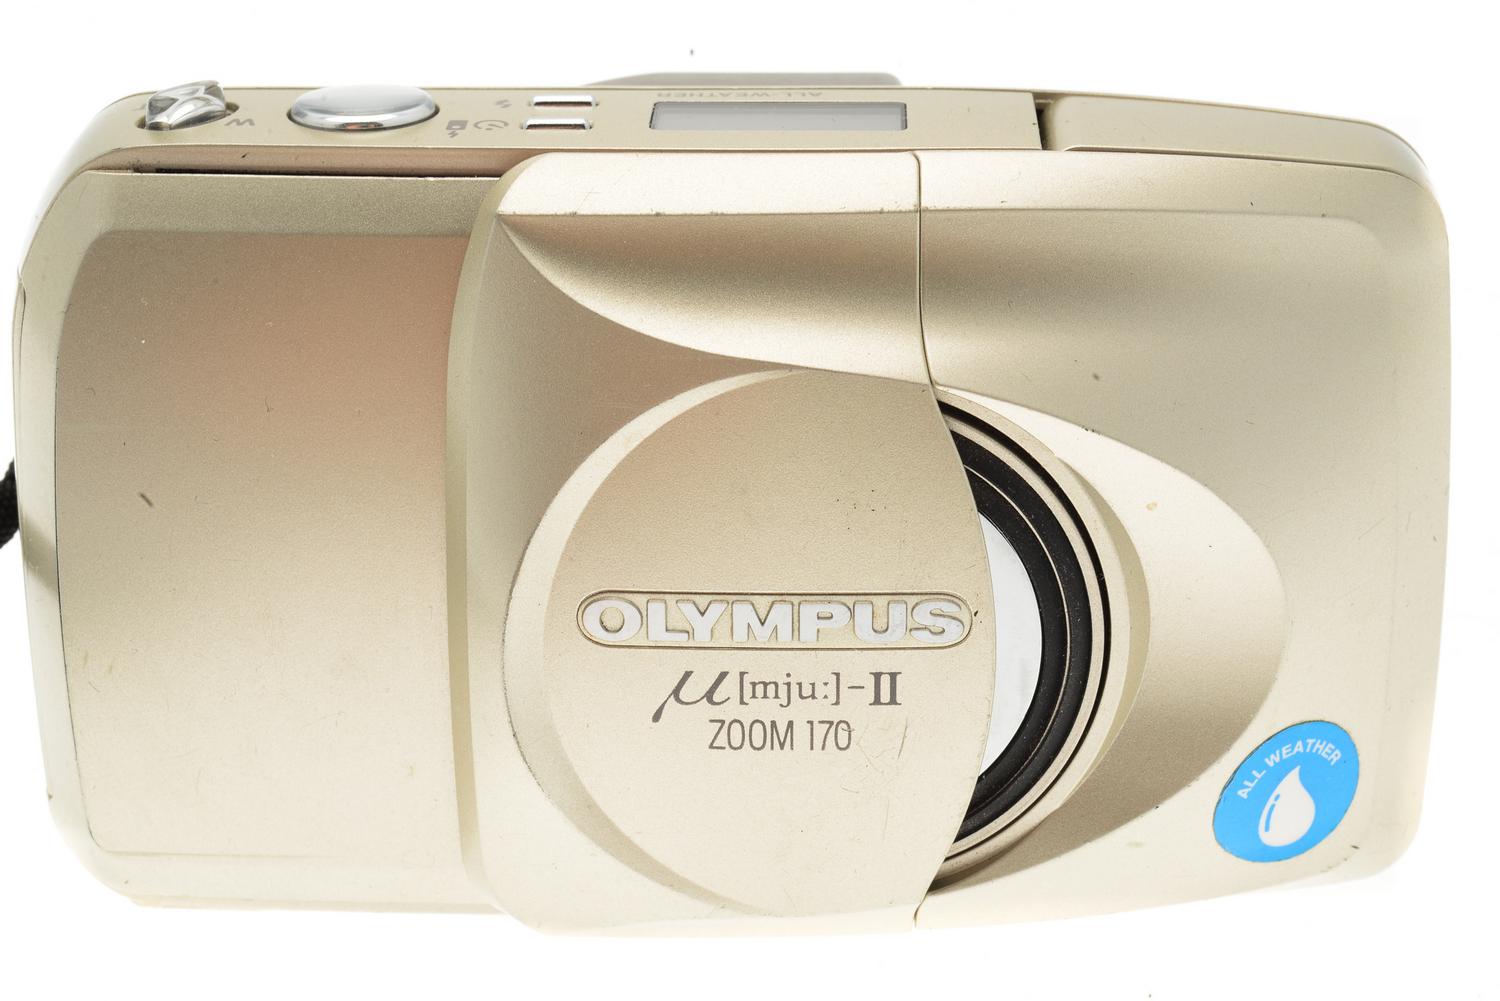 Olympus Mju-II Zoom 170 Camera – Kamerastore